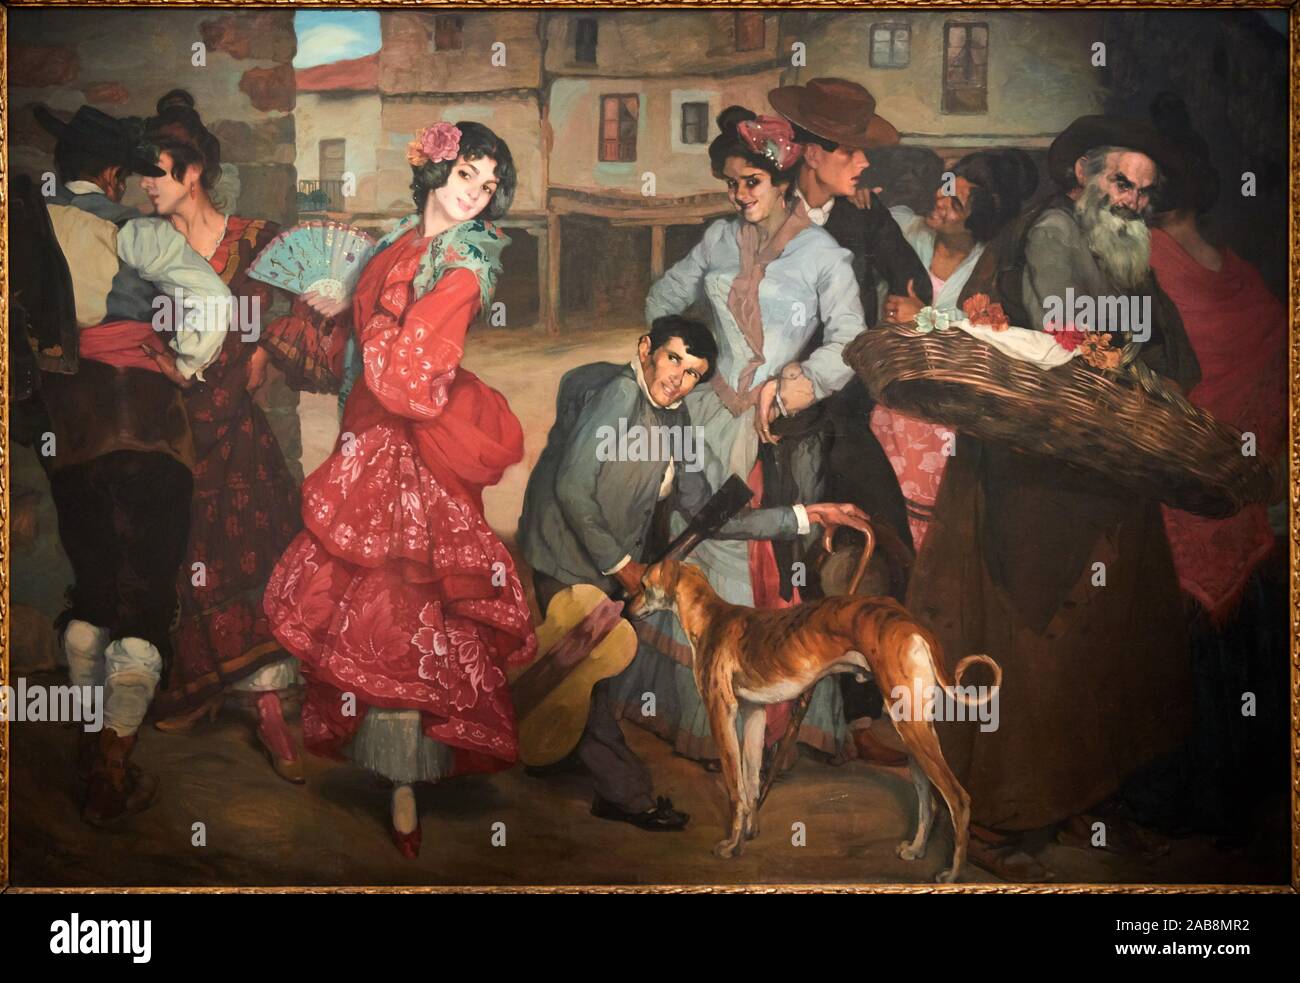 '''La Calle del vicio", la calle de las pasiones'' de 1904, Ignacio Zuloaga (1870-1945), el Museo de Bellas Artes, Bilbao, Vizcaya, País Vasco, España Foto de stock